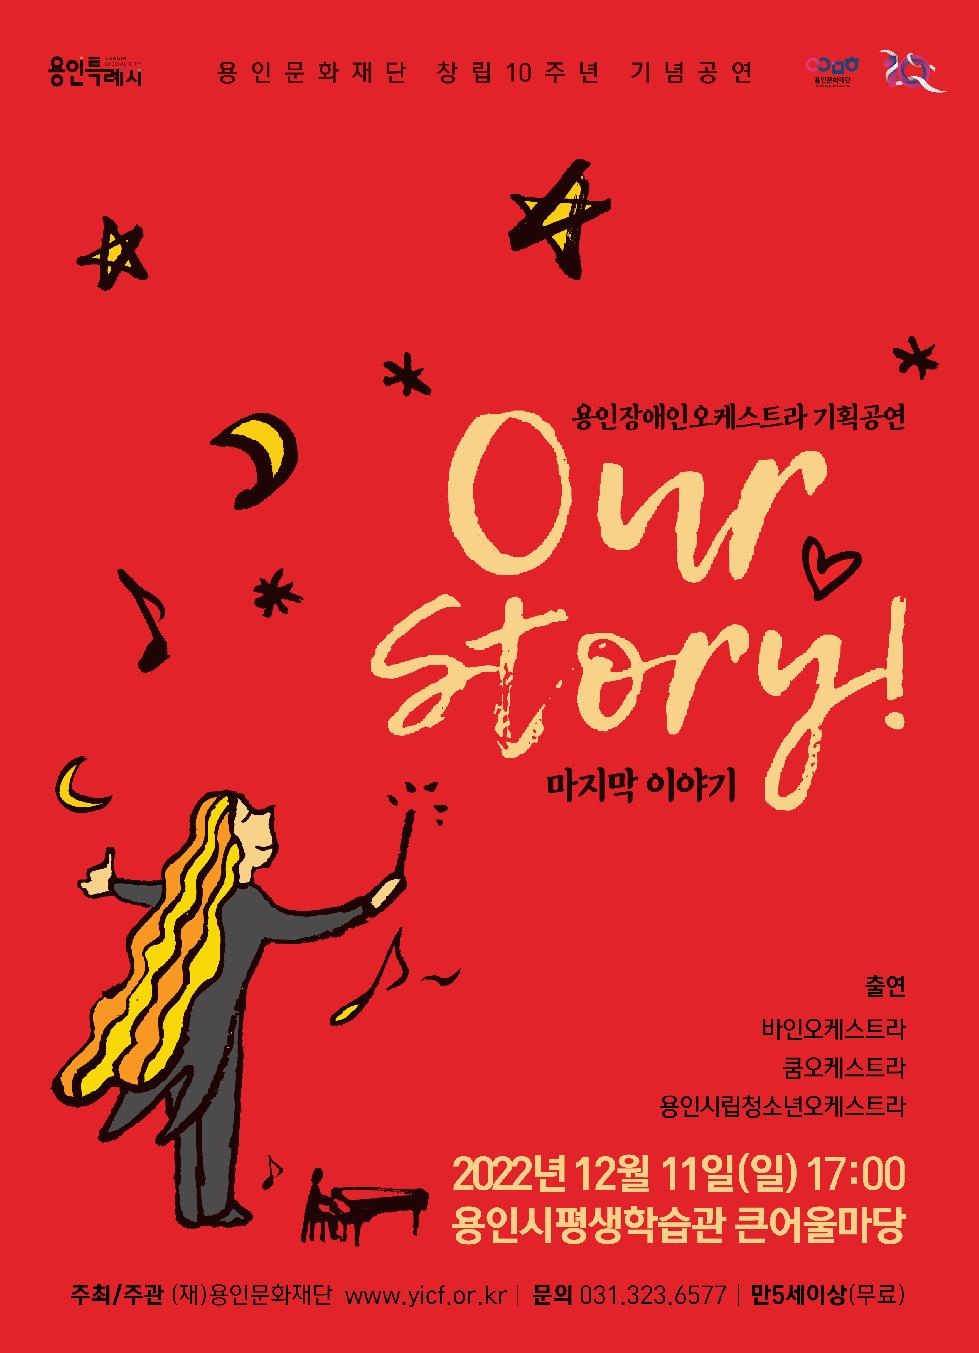 용인장애인오케스트라 기획공연  ‘Our Story-마지막이야기’